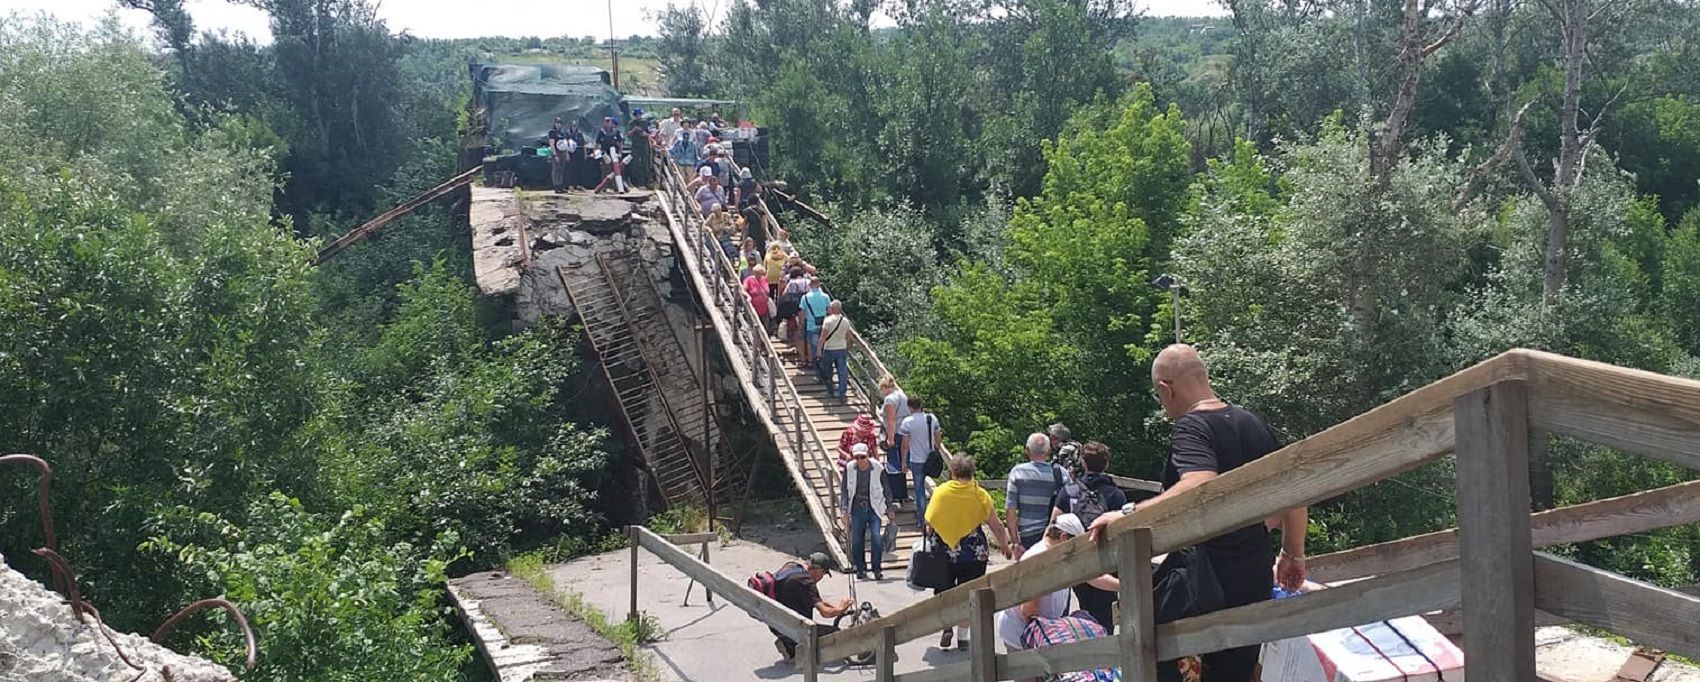 Украина 31 июля представит в Минске предложения по восстановлению моста в Станице Луганской